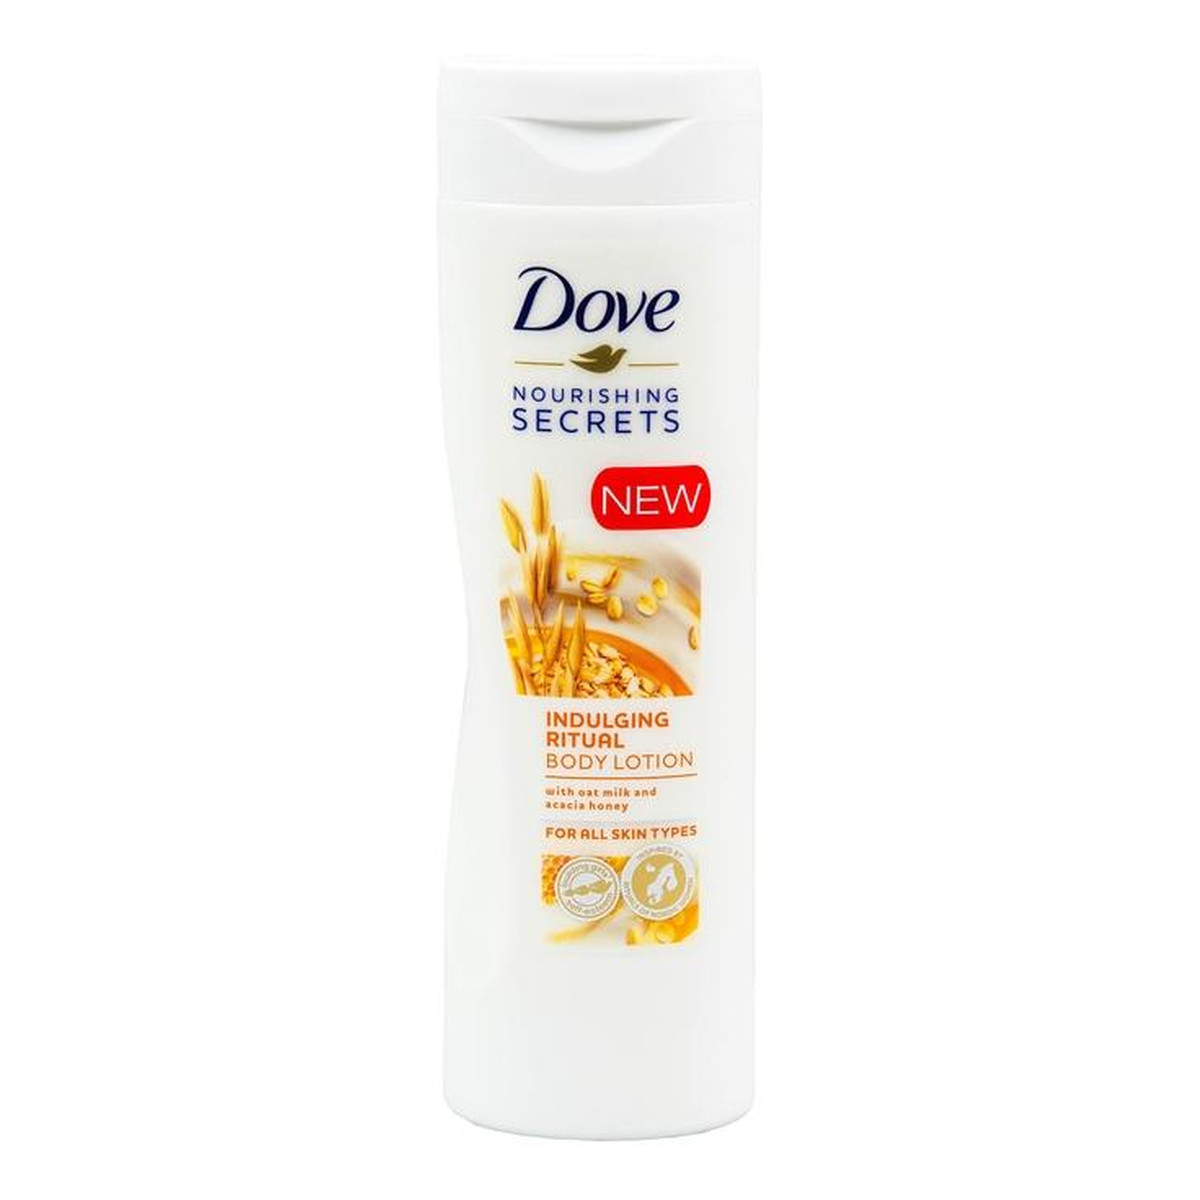 Dove Nourishing Secrets odżywczo-nawilżający balsam do ciała Oat Milk & Acacia Honey 400ml